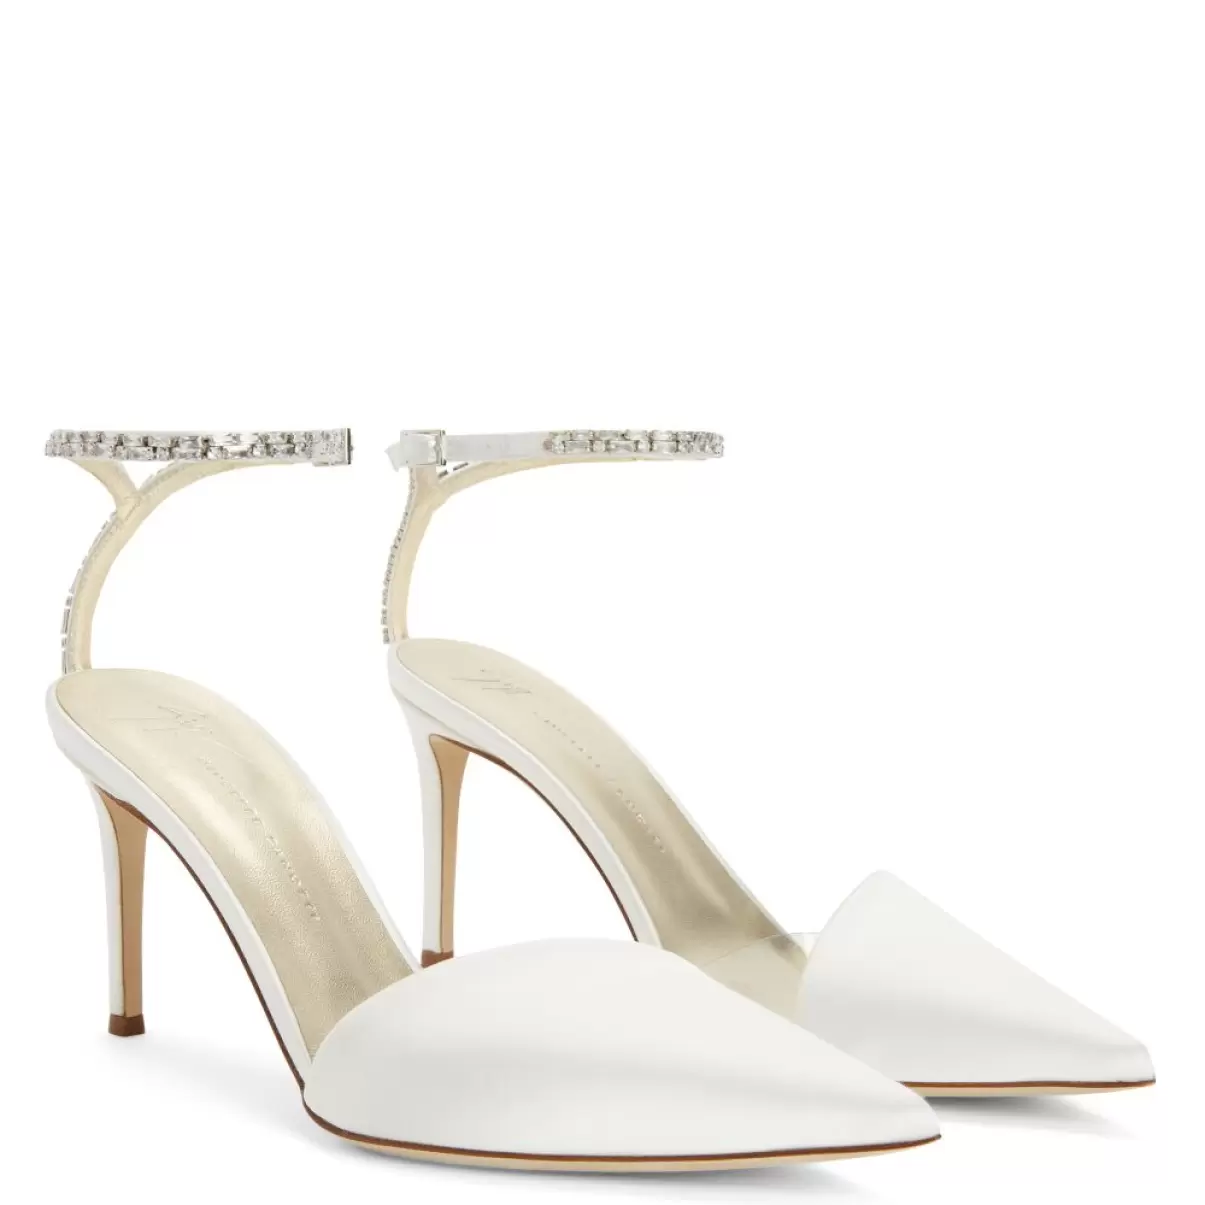 Blanco Mujer Giuseppe Zanotti Xenya Crystal Zapatos De Salón - 2